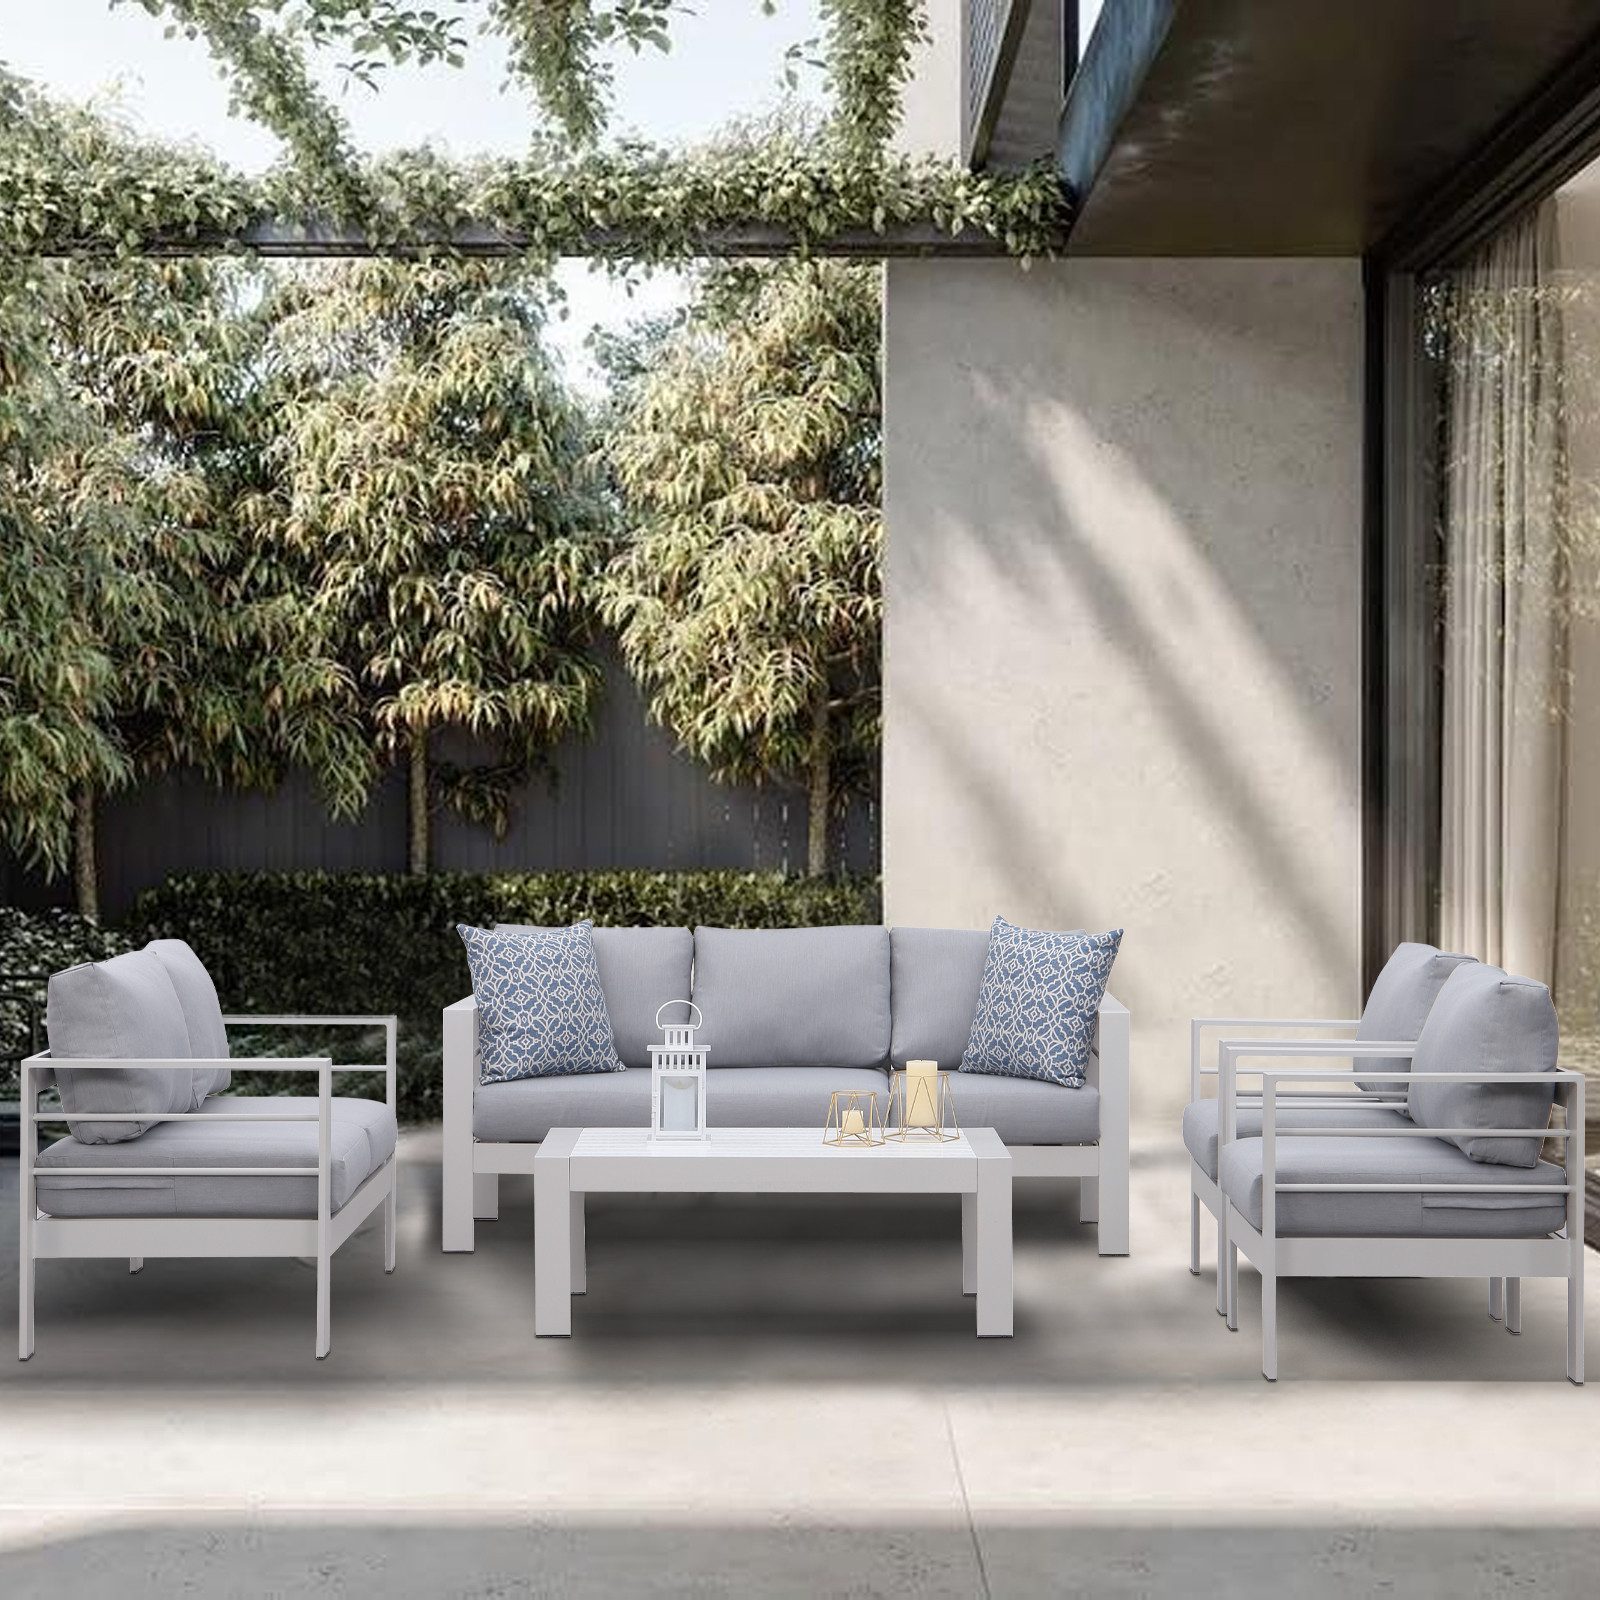 MeXo Gartenlounge-Set Gartenmöbel Set Aluminium Loungeset für Terrasse Balkon, (Set, 1×3-Sitzer Sofa, 1×2-Sitzer Sofa, 2×Sessel, 1×Tisch, 14×Auflagen), wetterfest Sitzgruppe Gartengarnitur für 6-7 Personen